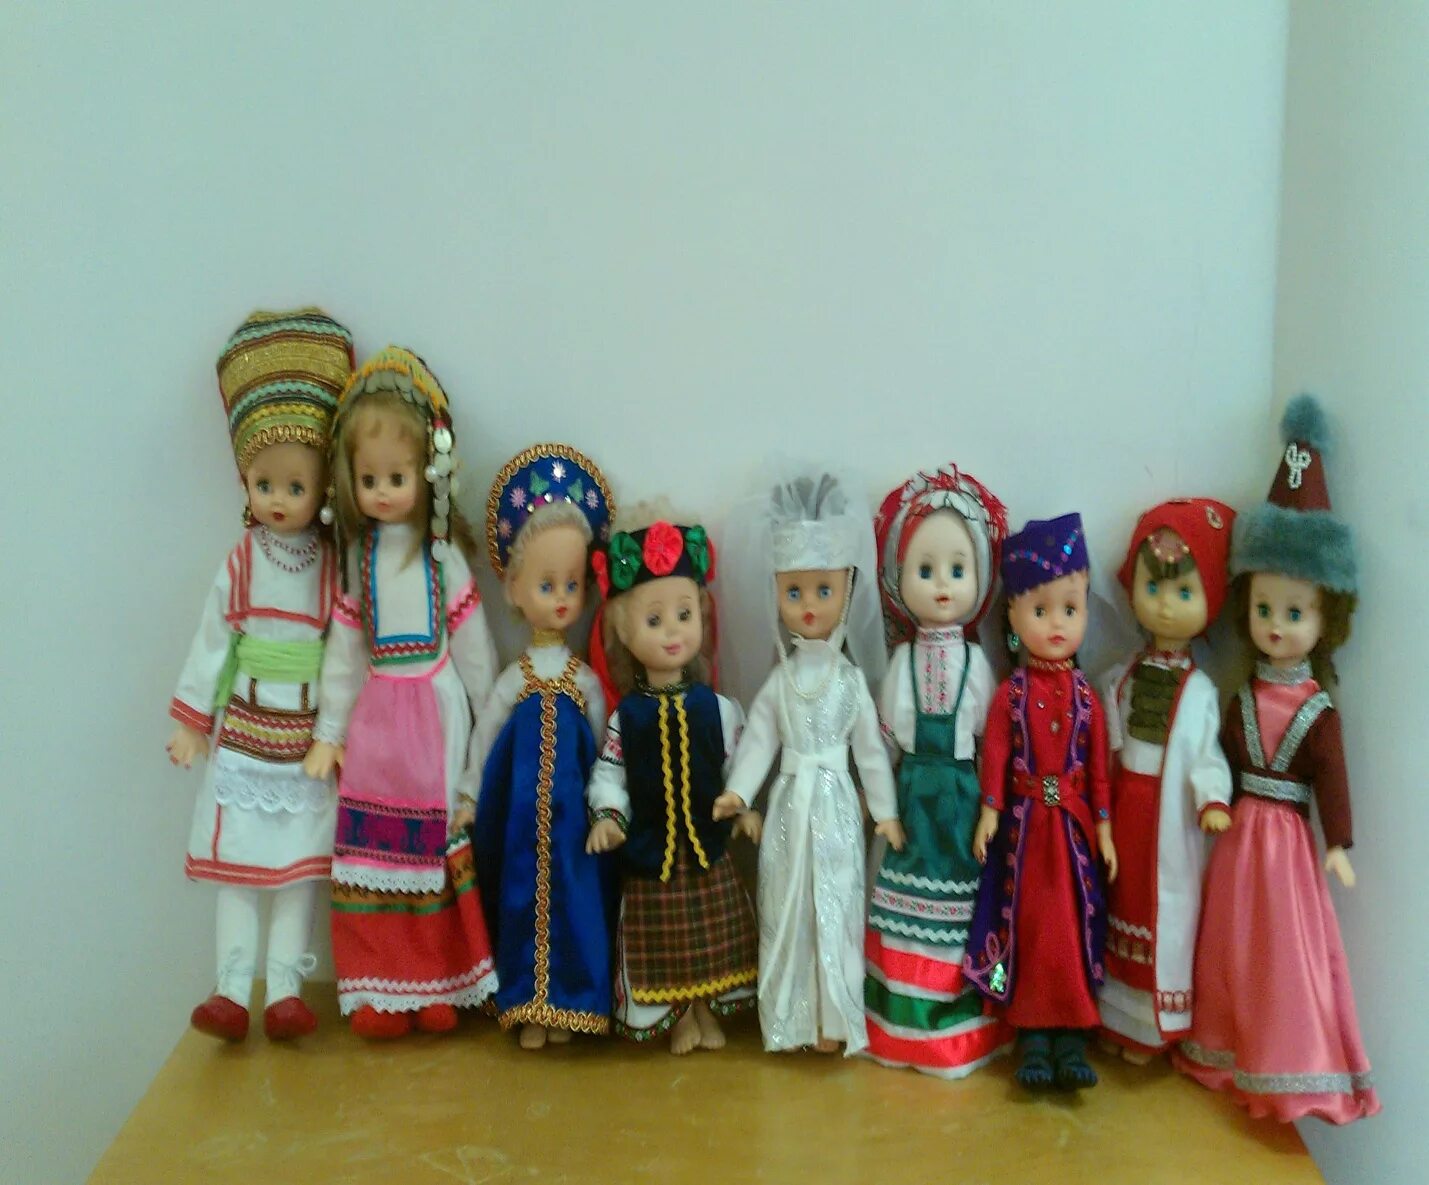 Мини музей кукол в детском саду. Музей кукол в ДОУ. Куклы в национальных костюмах.